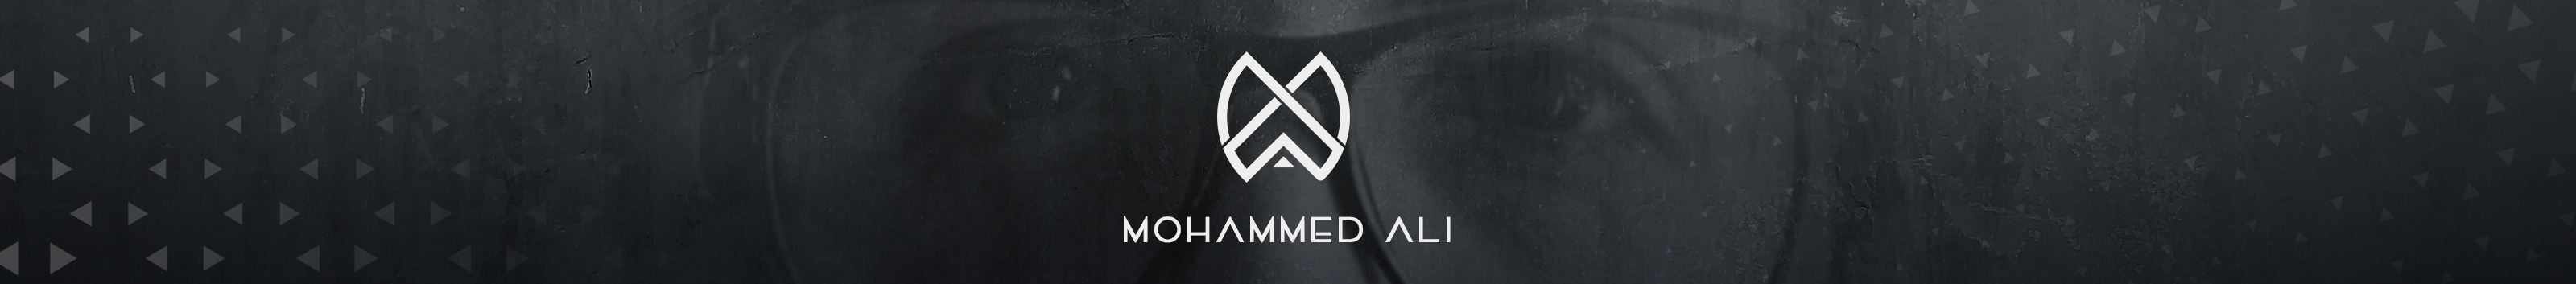 Mohammed Ali's profile banner